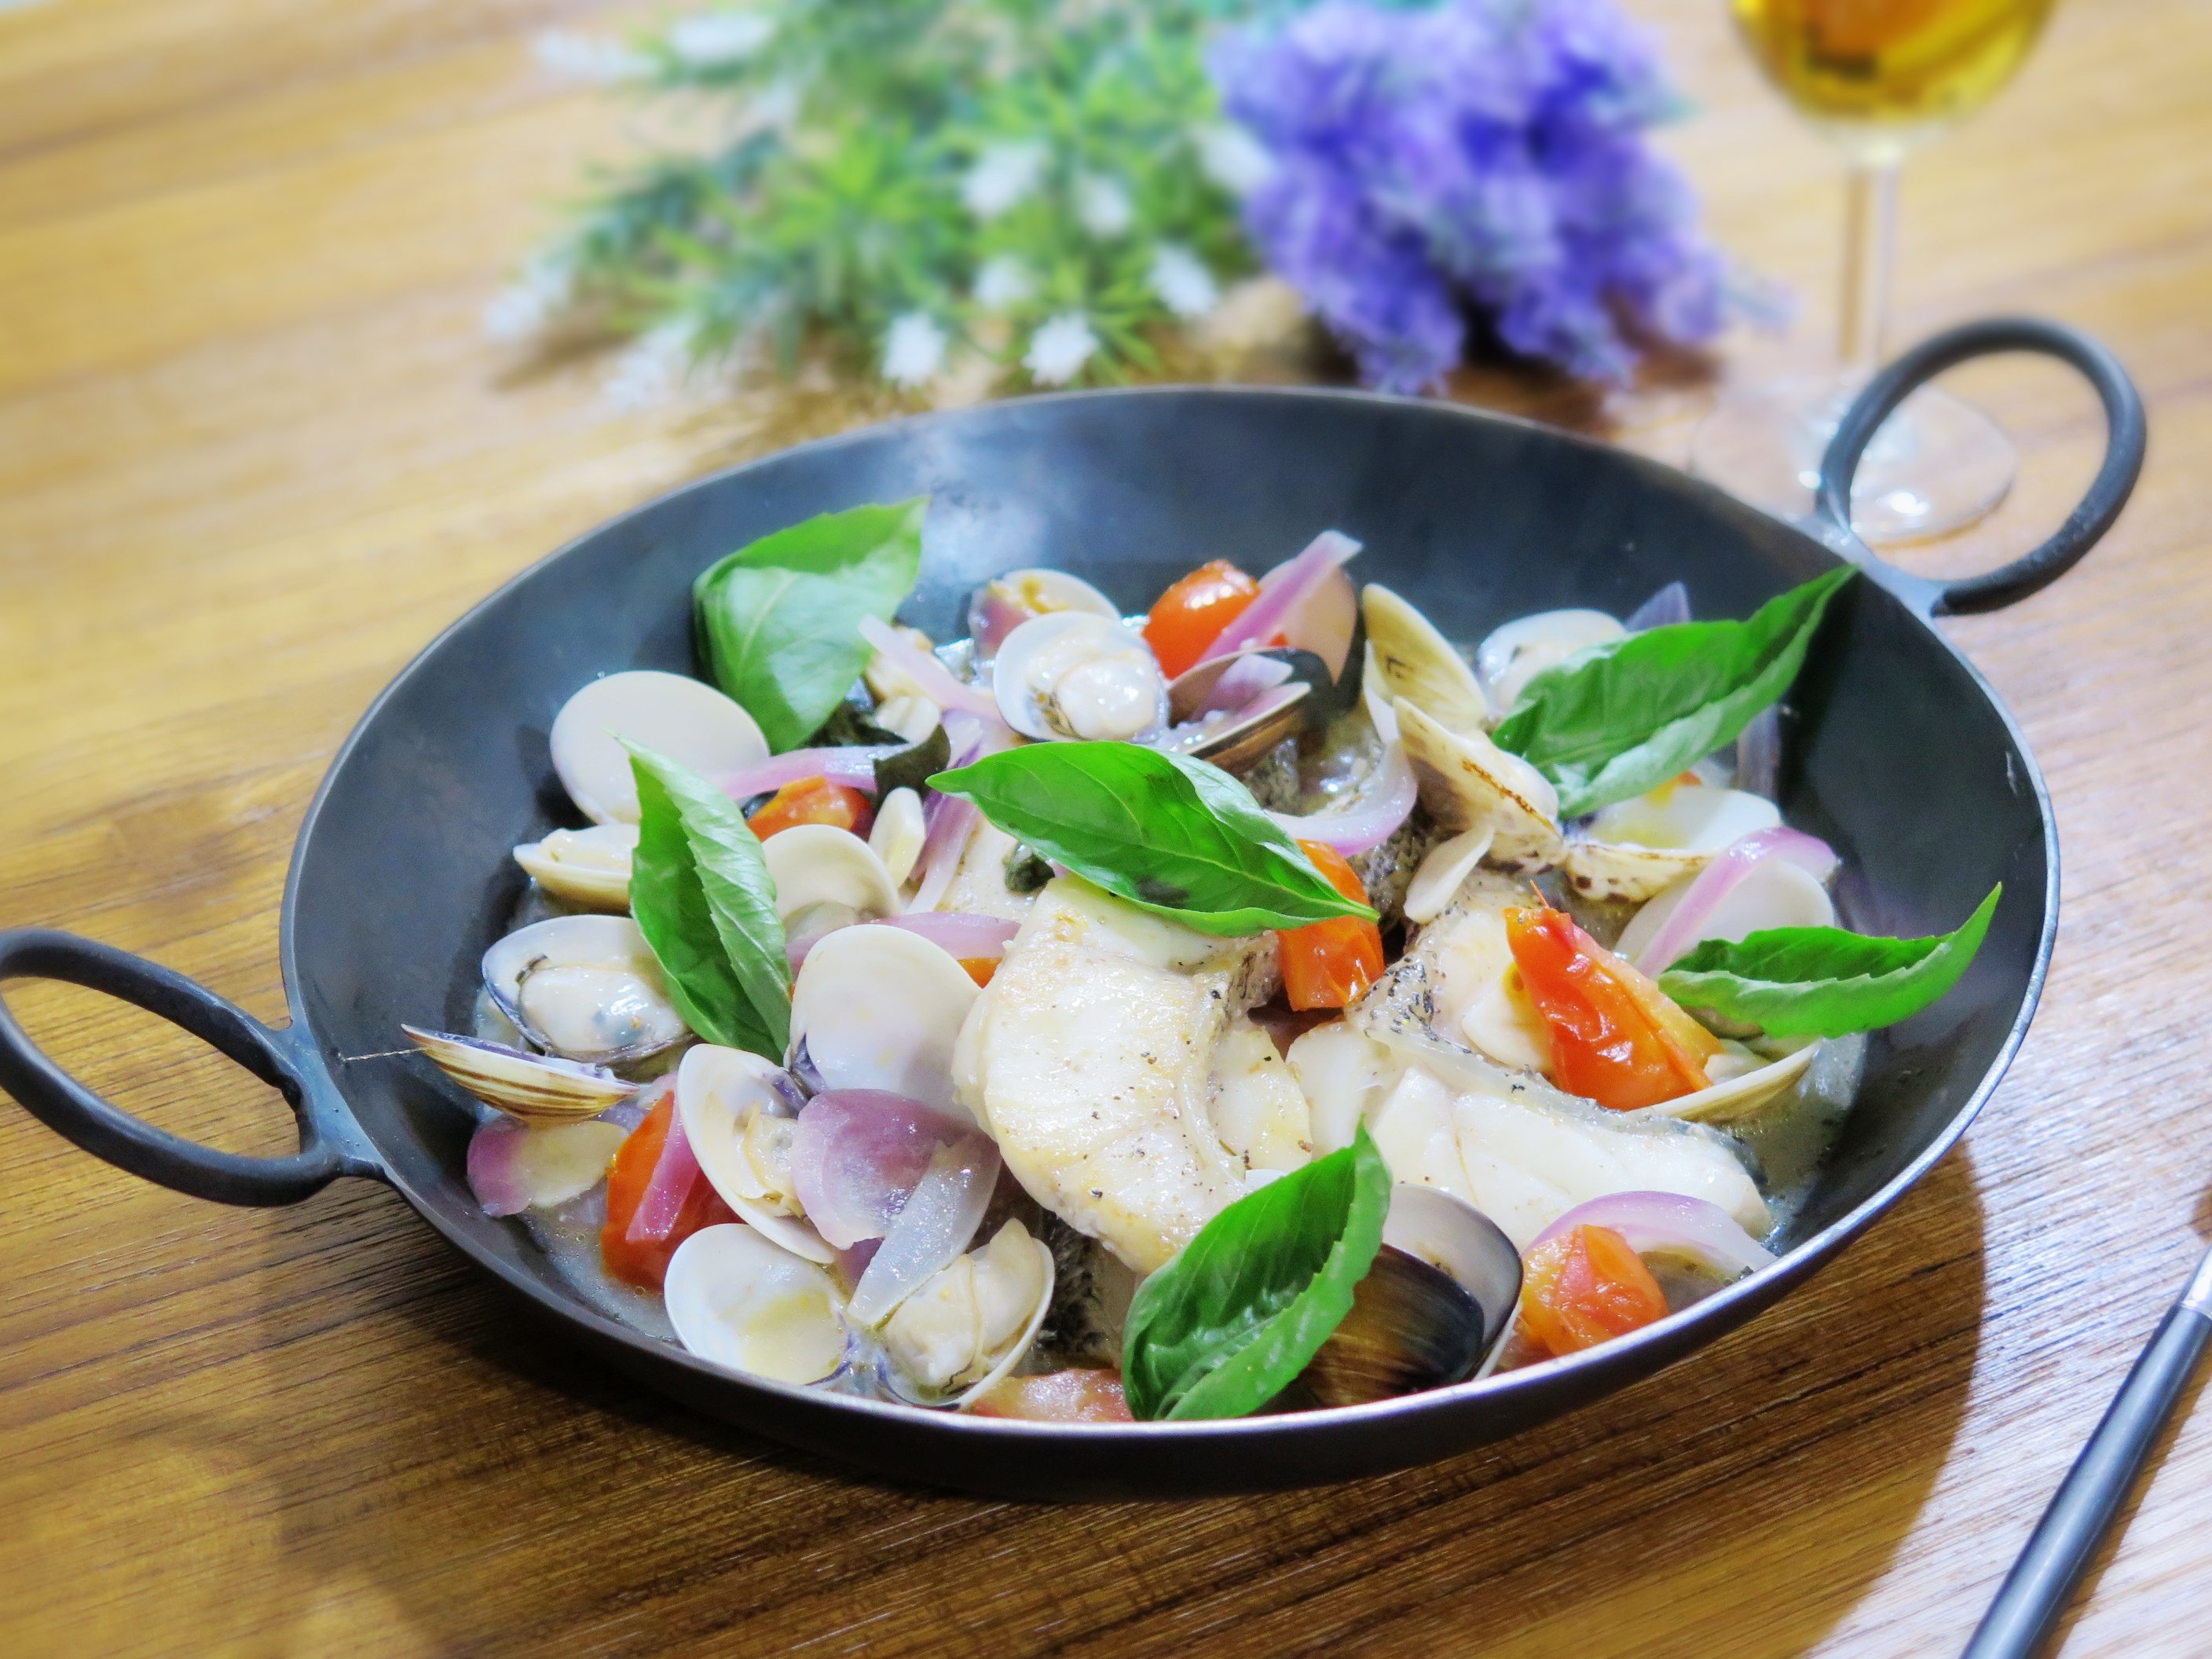 影音食譜 義式風味水煮魚食譜 做法 歐巴桑的快樂廚房的cook1cook食譜分享